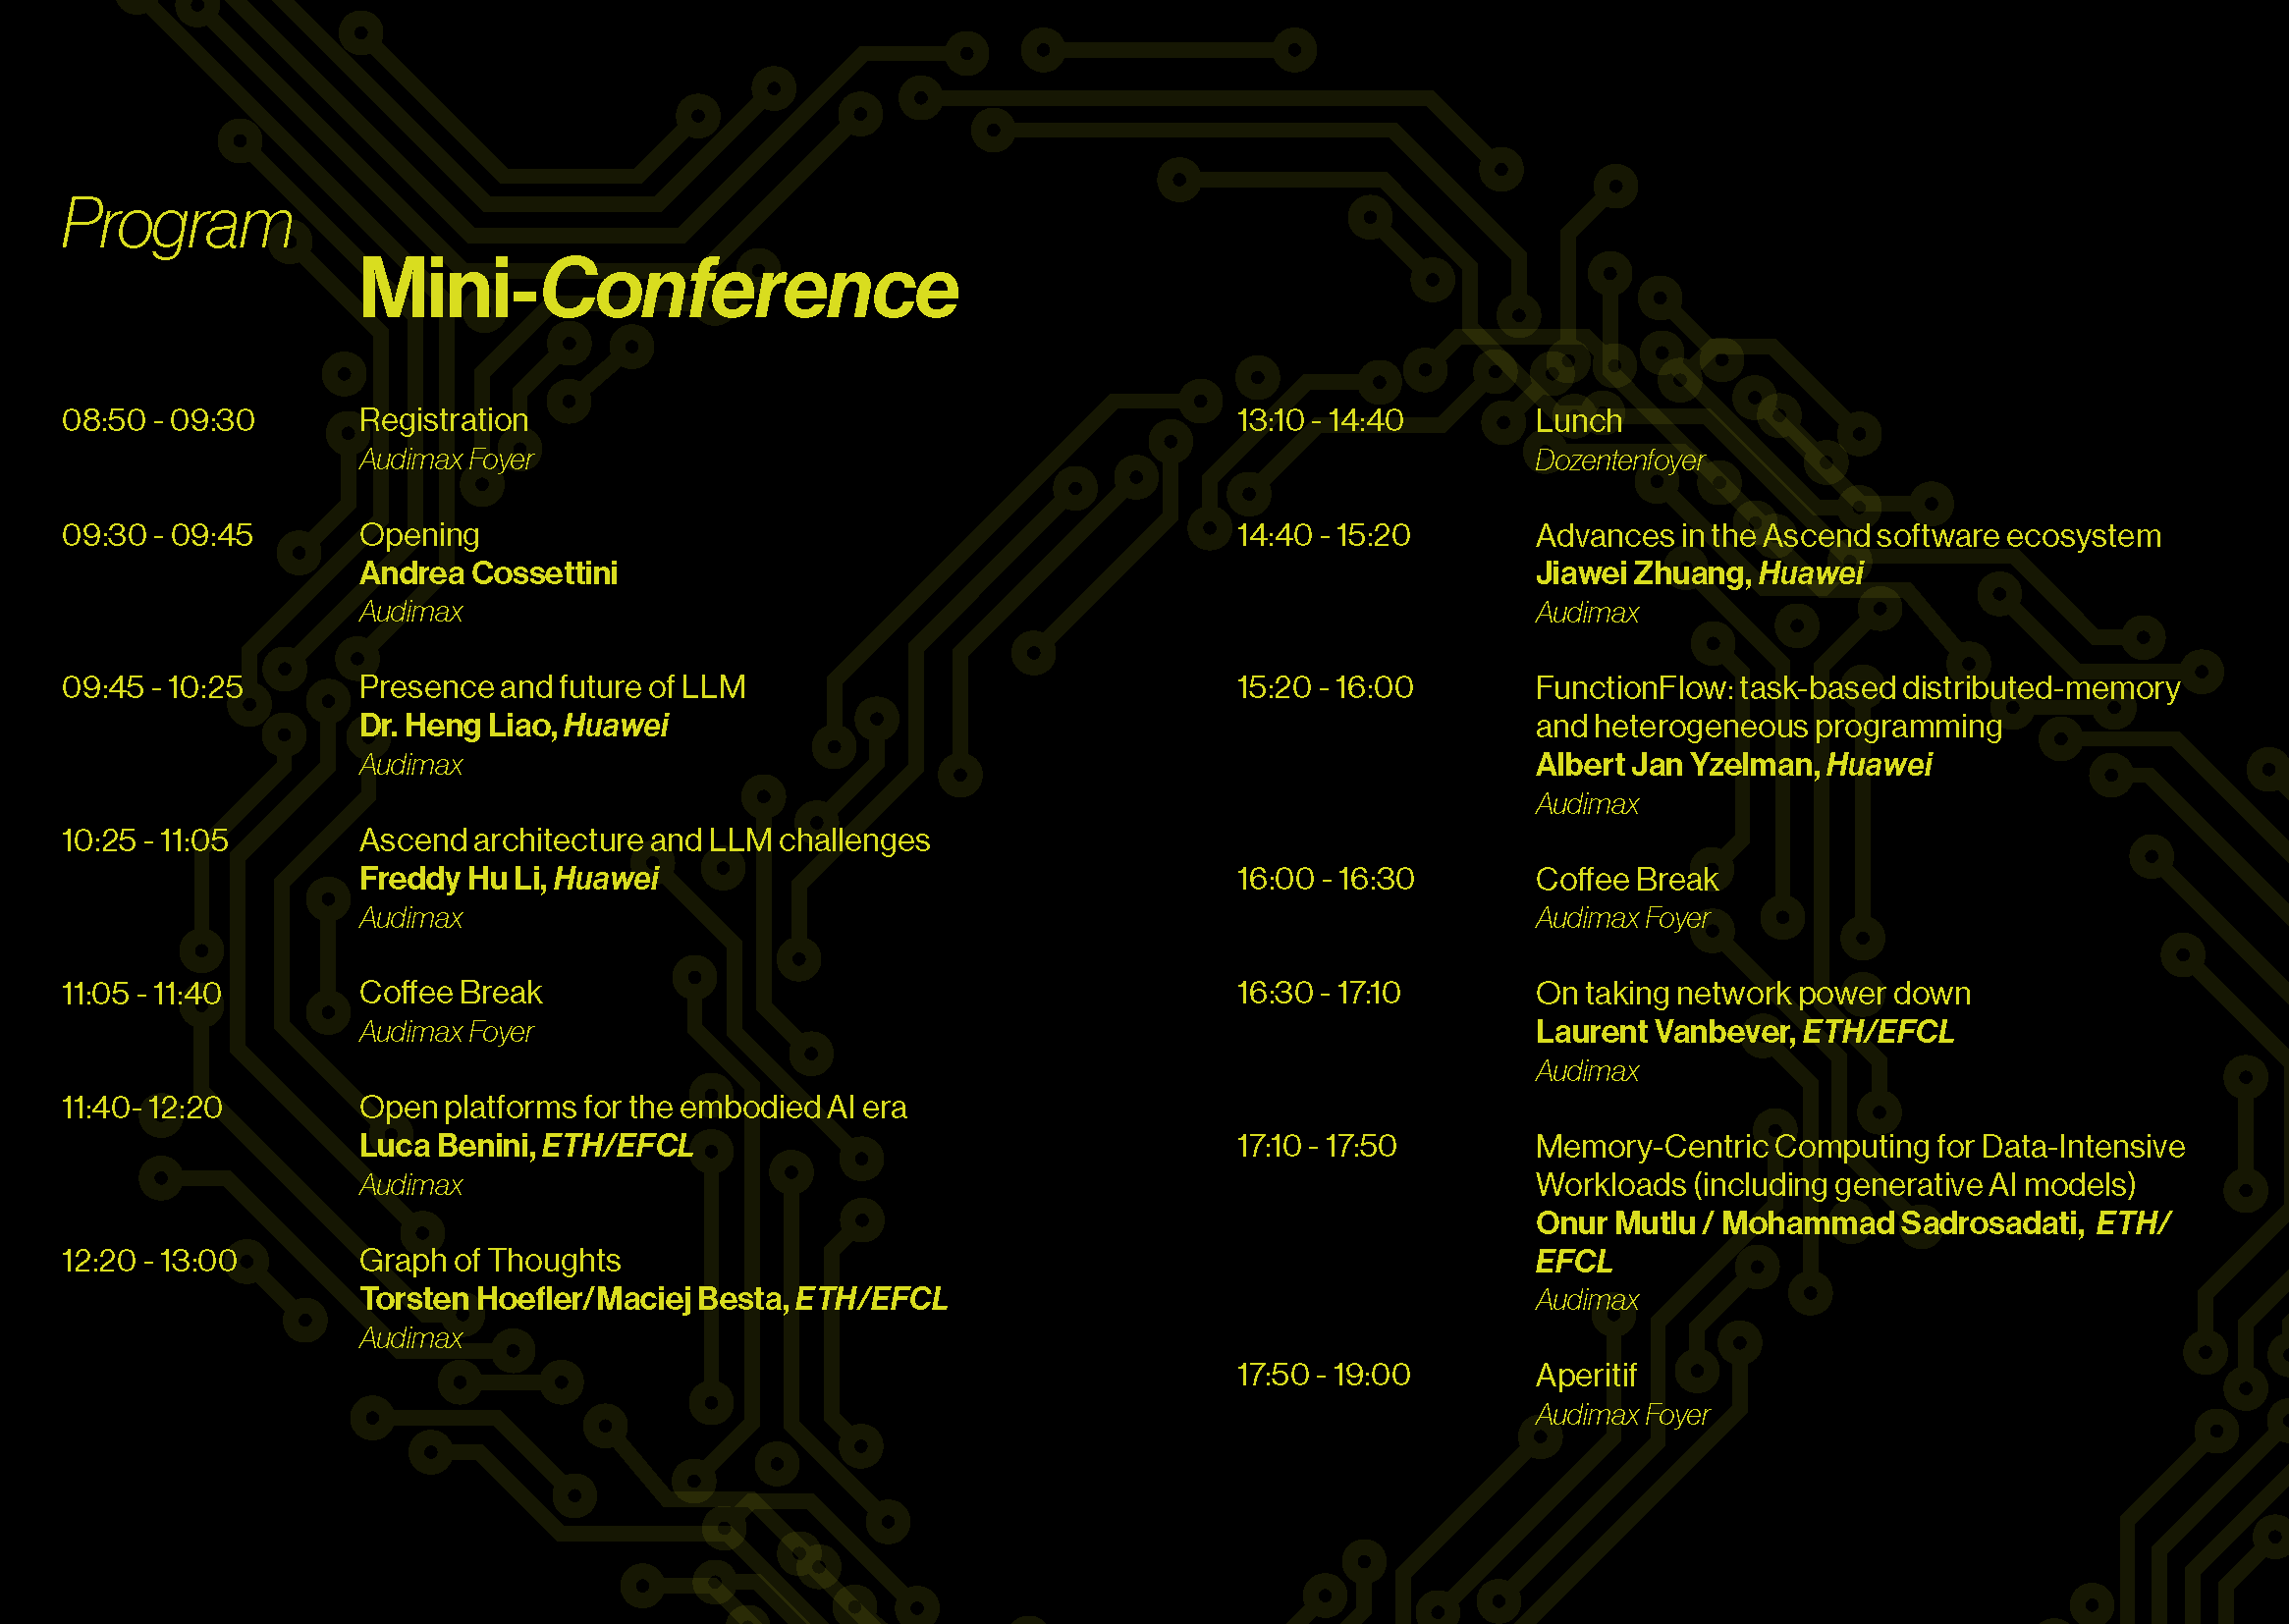 Mini-Conference Program